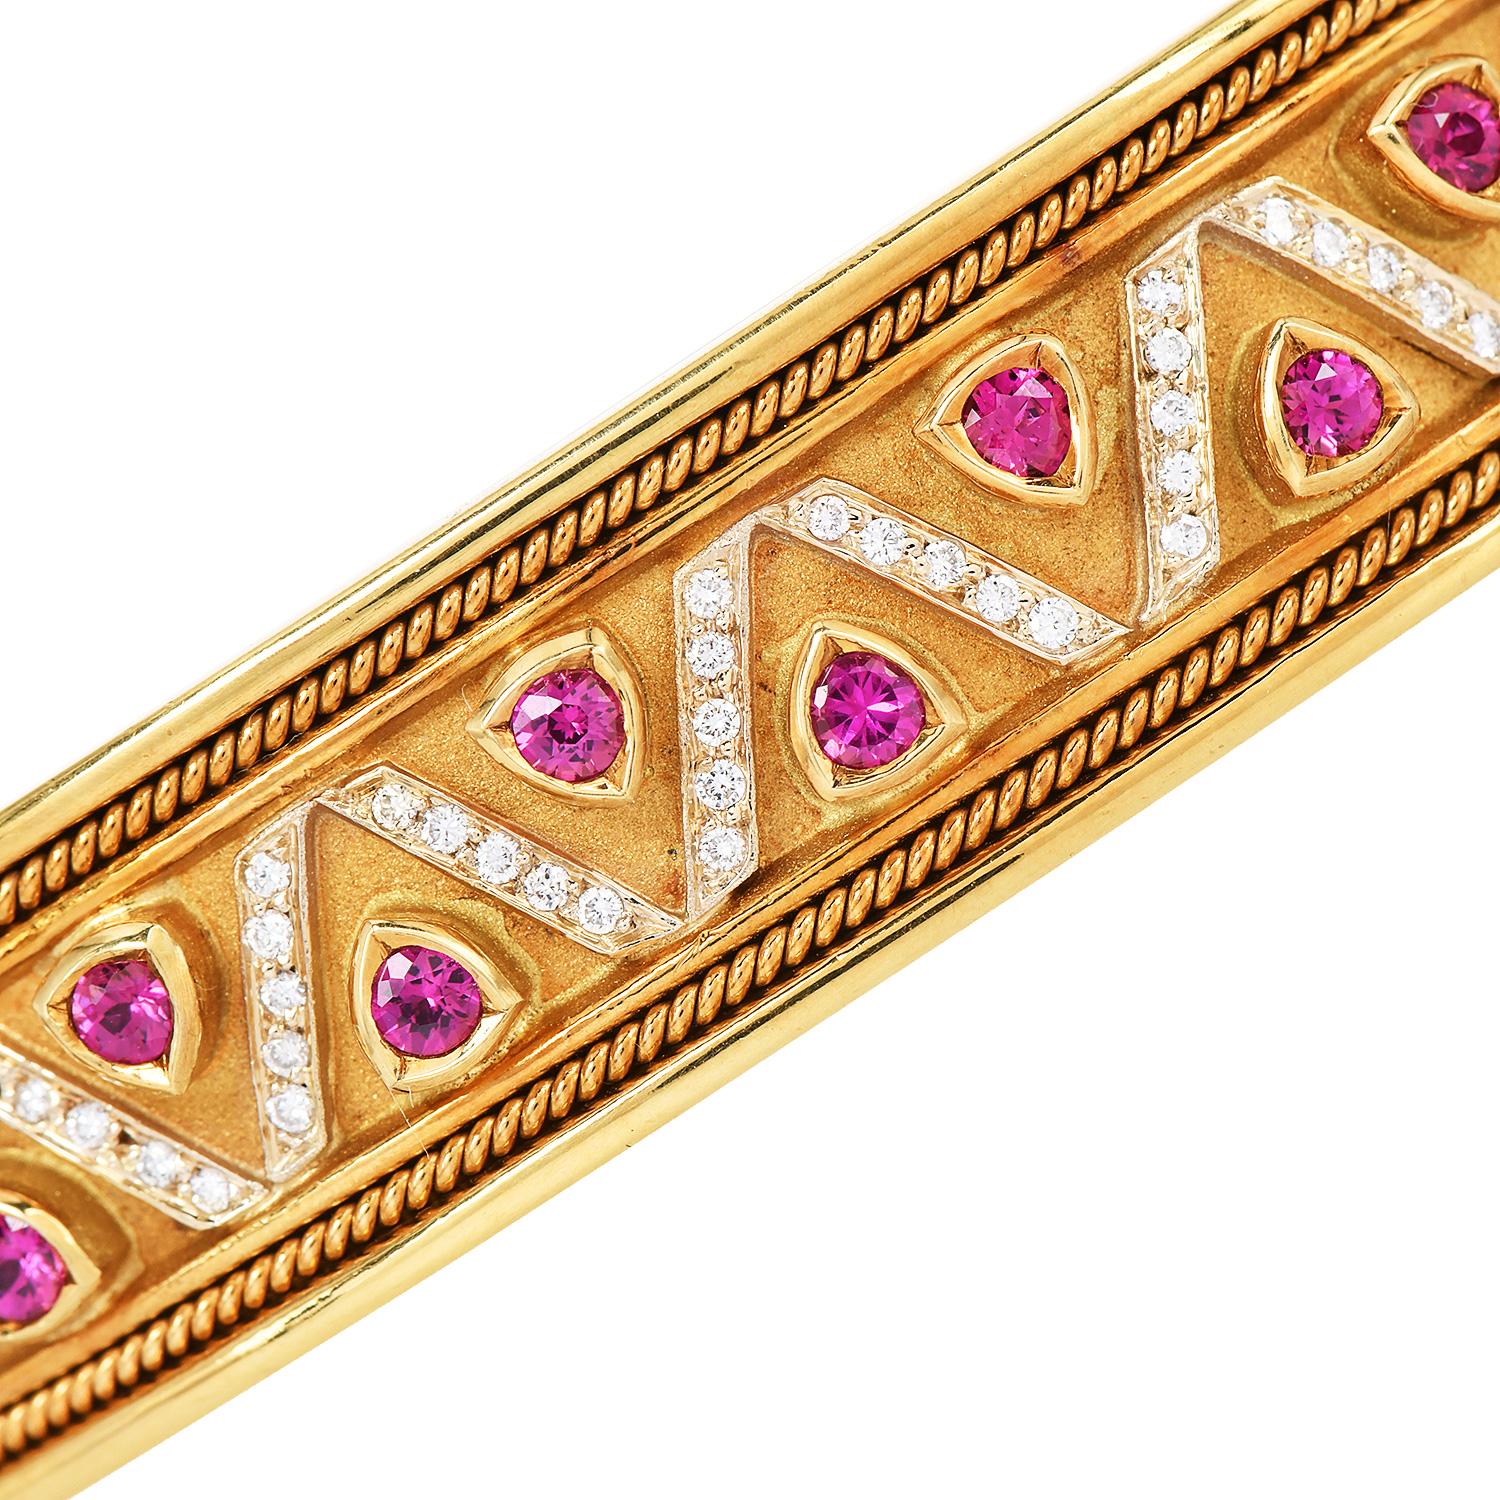 Este brazalete ancho de los años 80 es de oro amarillo macizo de 18 quilates con rubíes y diamantes auténticos.

La pulsera está decorada con piedras preciosas Rubíes y diamantes engastados en un patrón de diseño triangular. 

La pulsera Cuff tiene